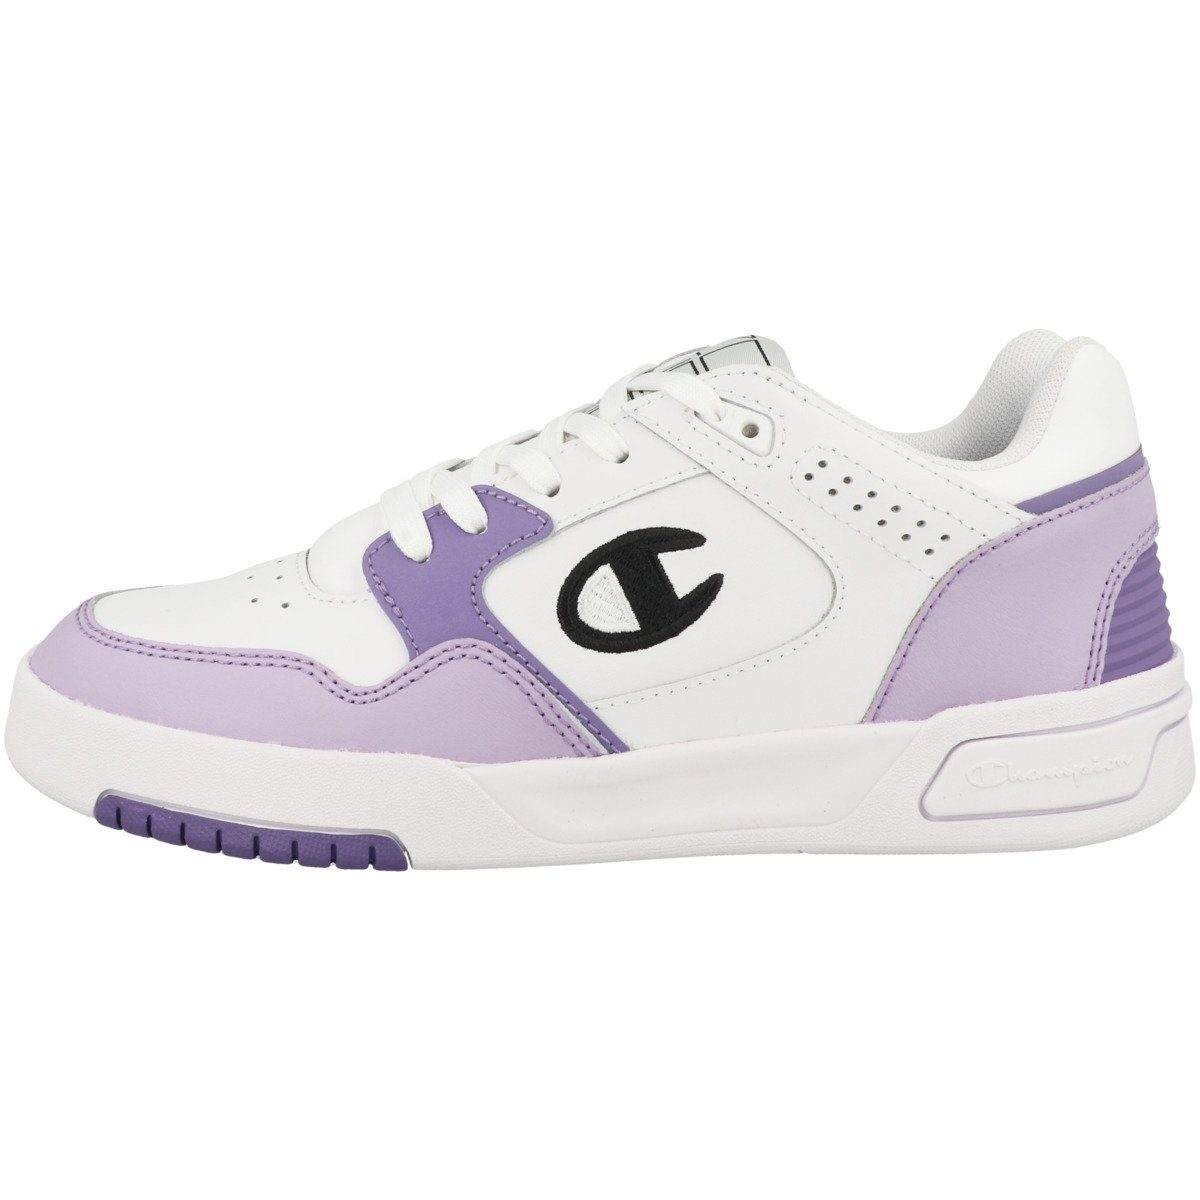 Champion Low Cut Shoe Z80 Damen Sneaker Perforation white-violet